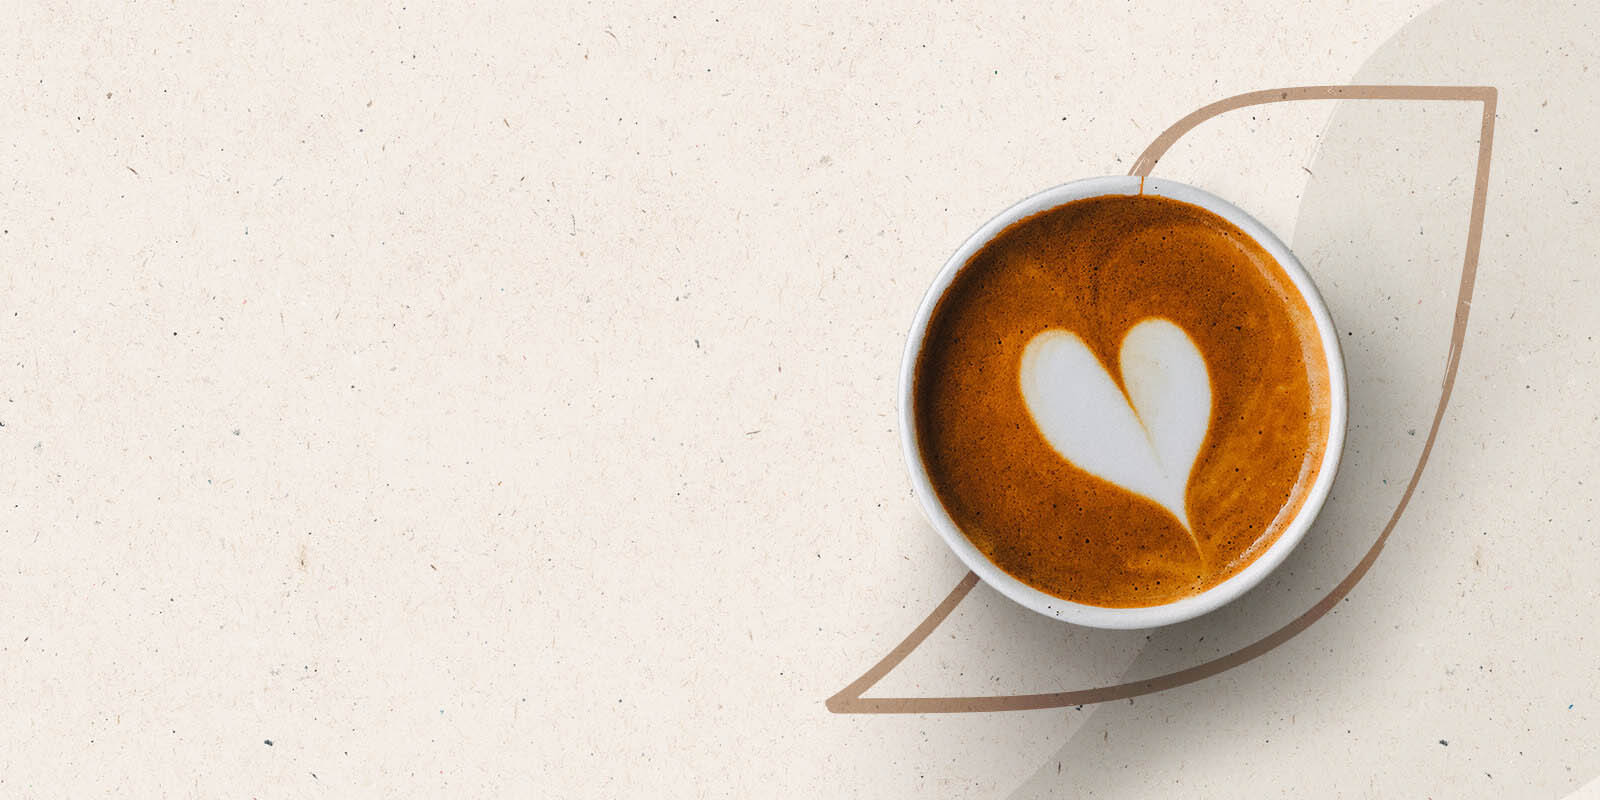 Coffee mug with a latte art heart